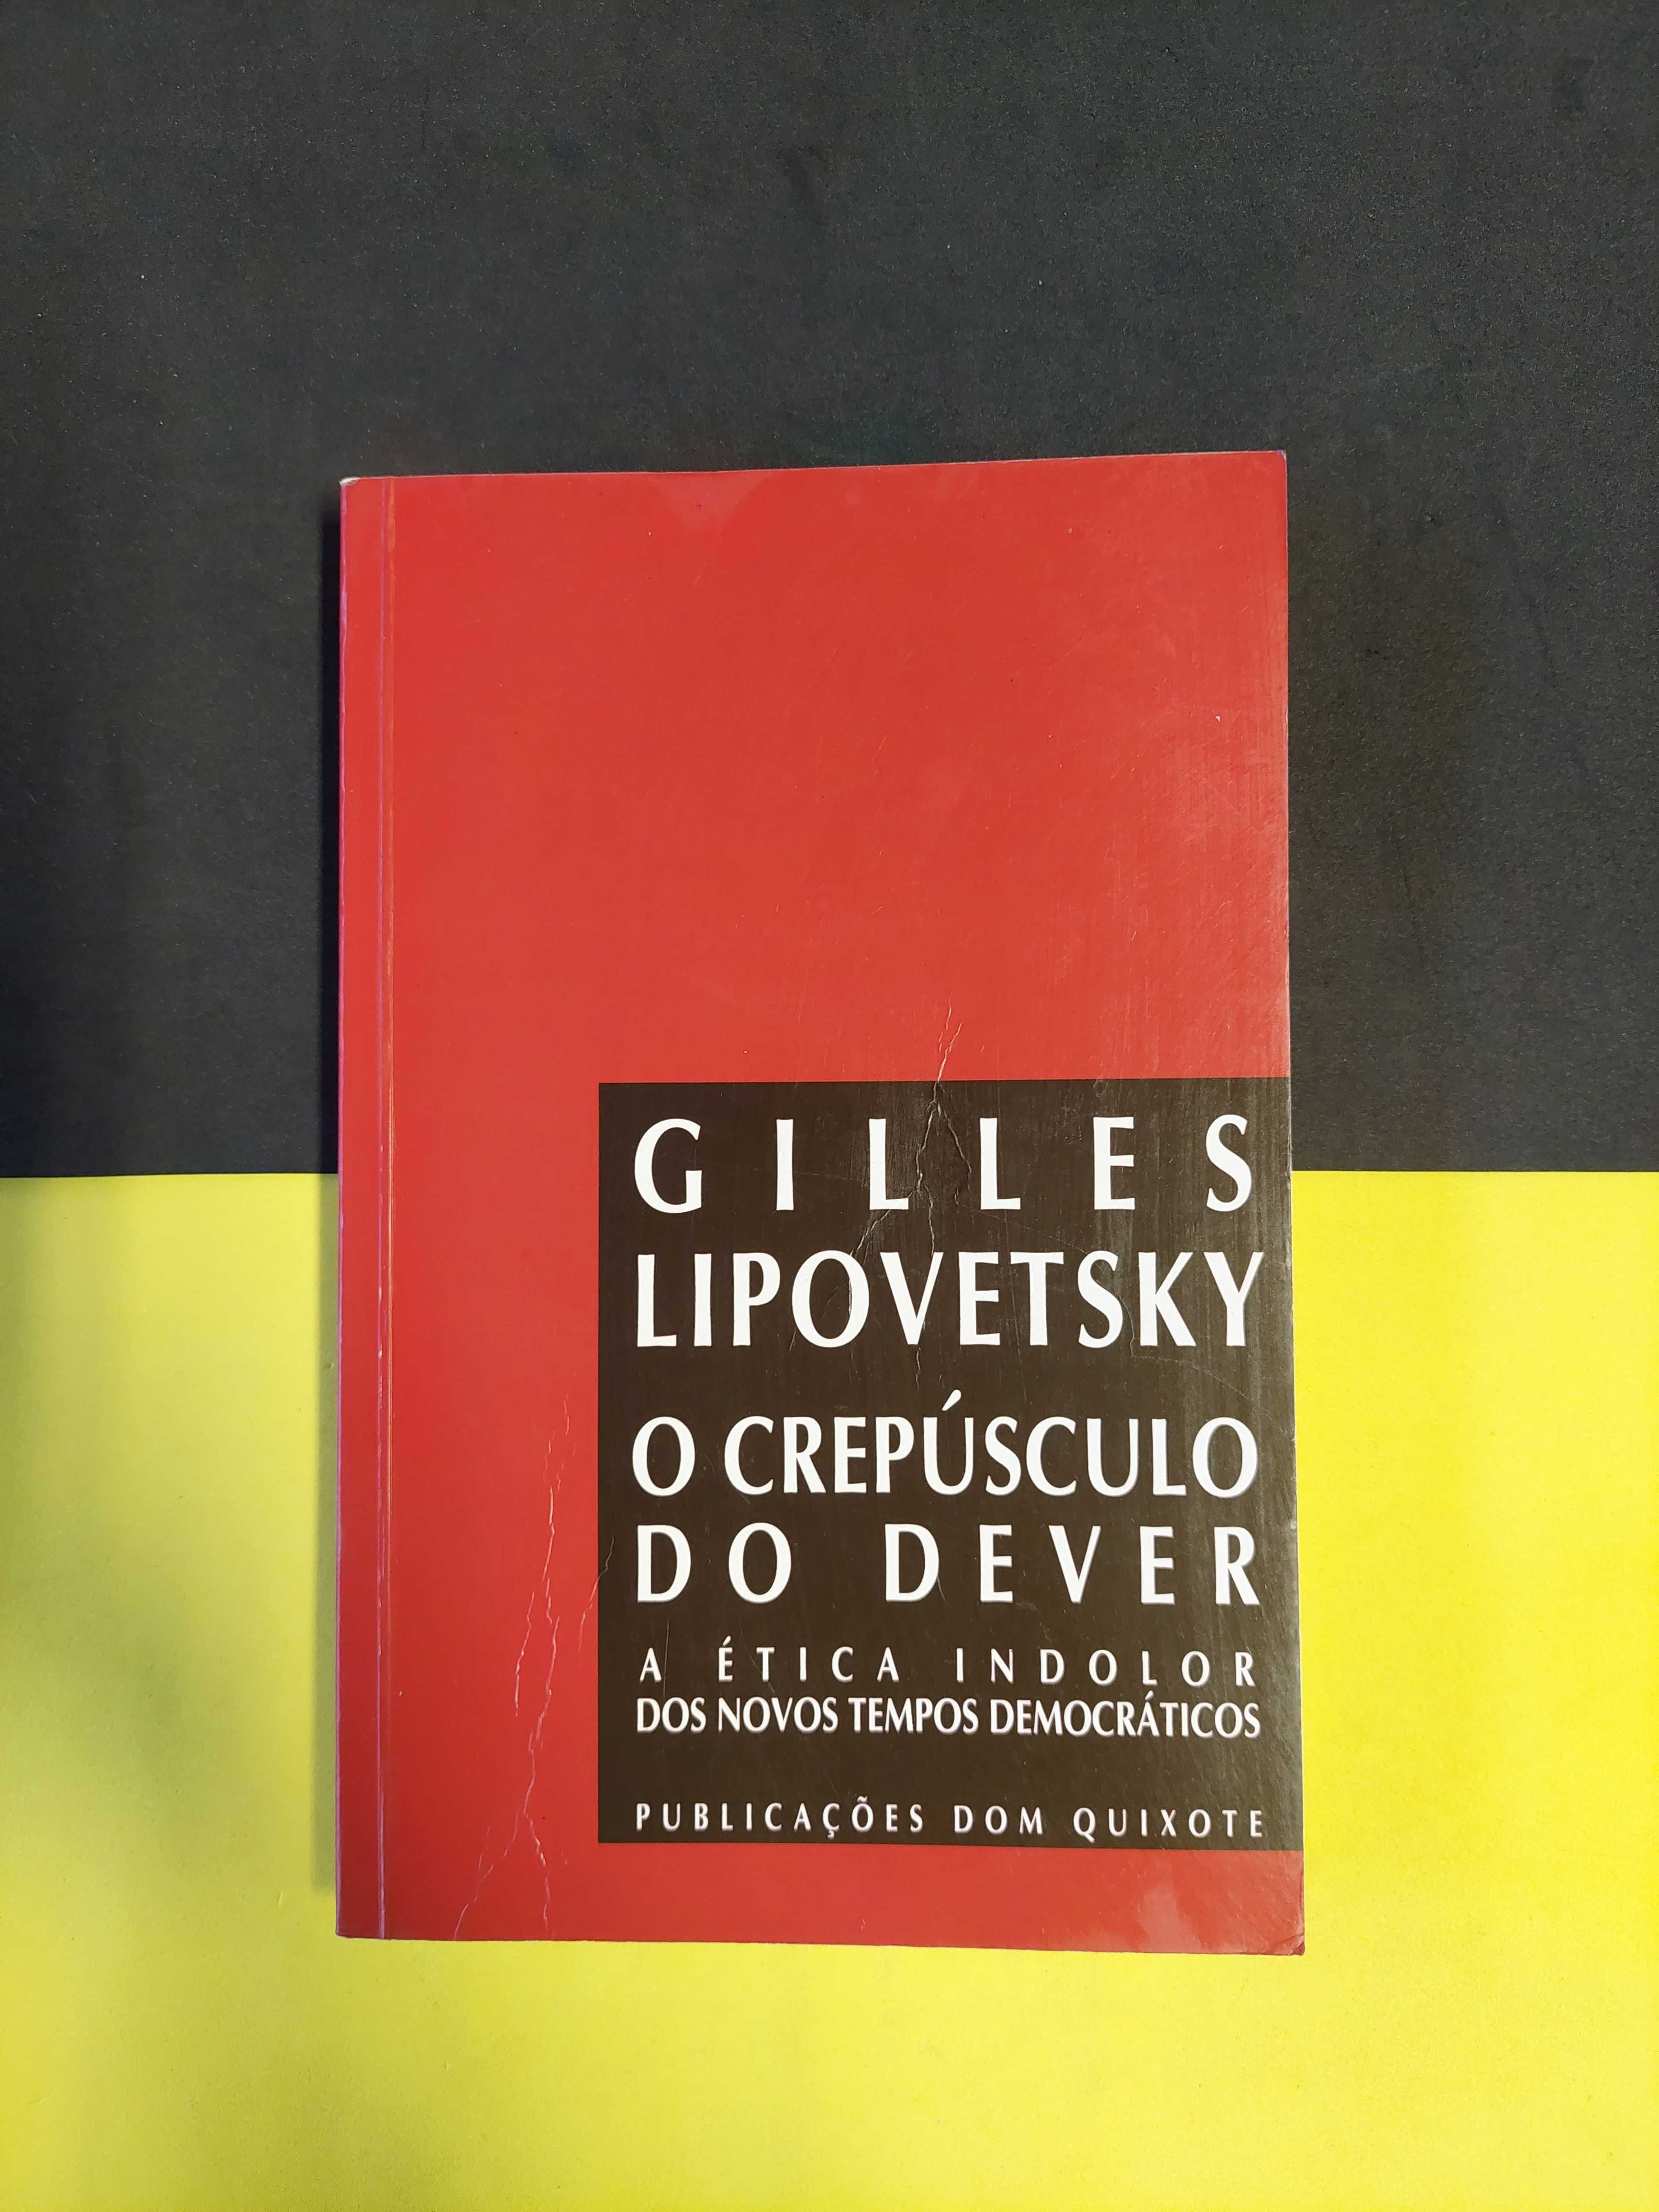 Gilles Lipovtsky - O crepúsculo do dever